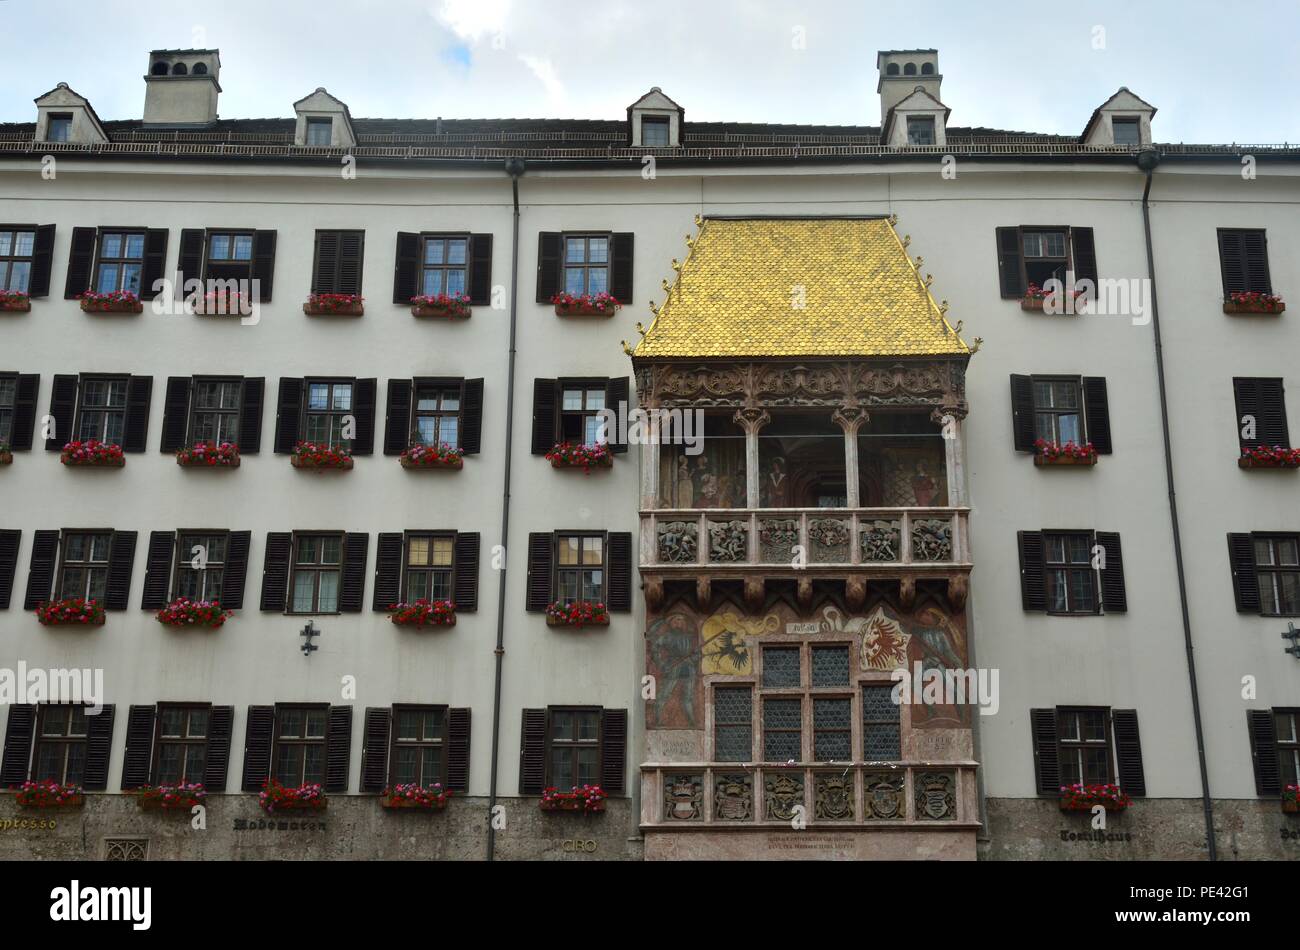 Das Goldene Dachl das berühmteste Wahrzeichen der Stadt, das 1500 fertiggestellt wurde. Altstadt von Innsbruck, Österreich, Europa. Stockfoto